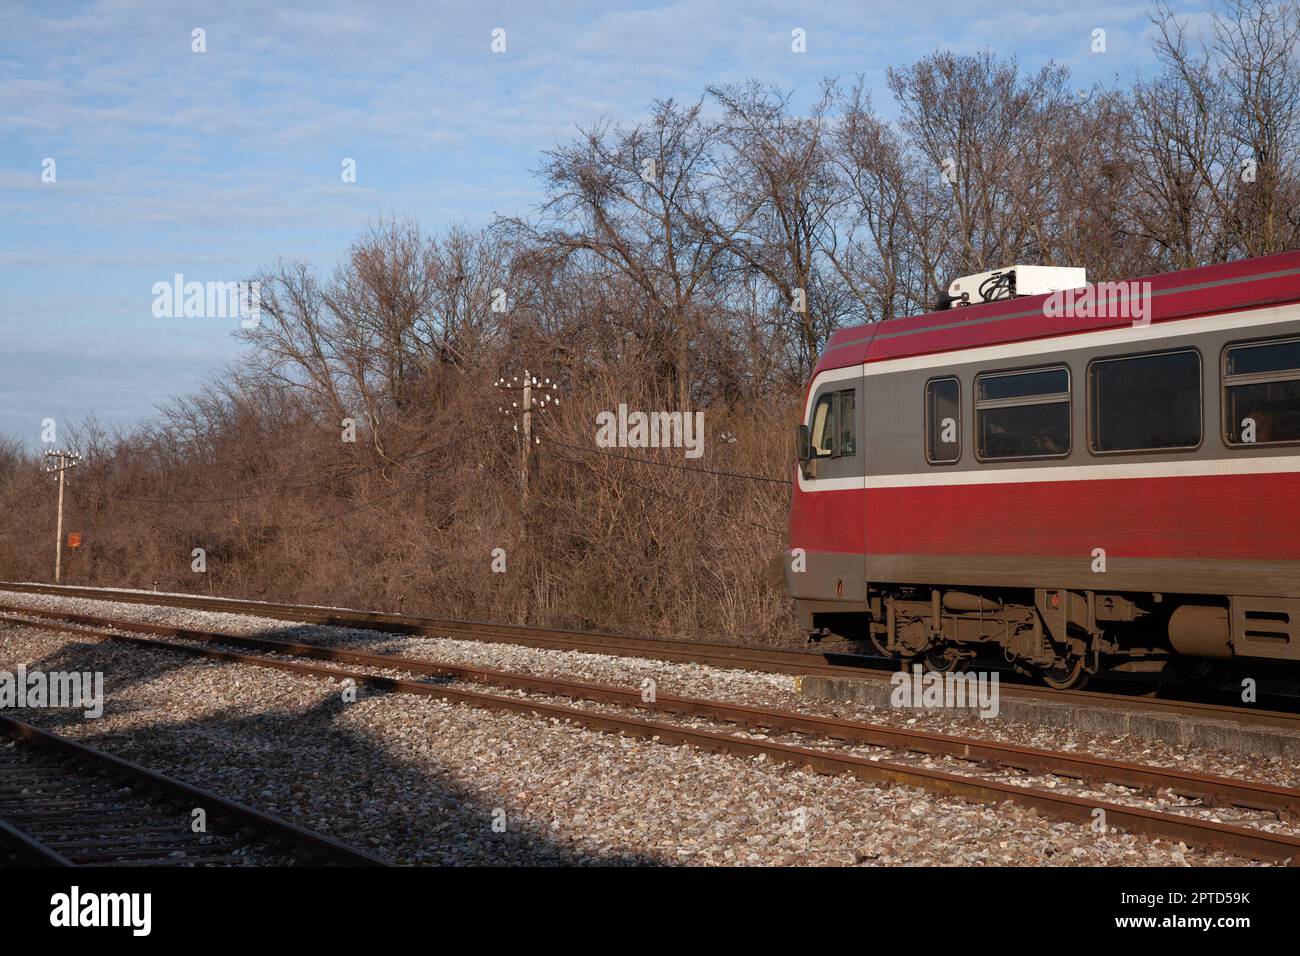 Bild eines Zuges, der die Stadt Banatsko novo selo, Serbien, durchquert und von den nationalen Personenbahnen Serbiens betrieben wird. Stockfoto